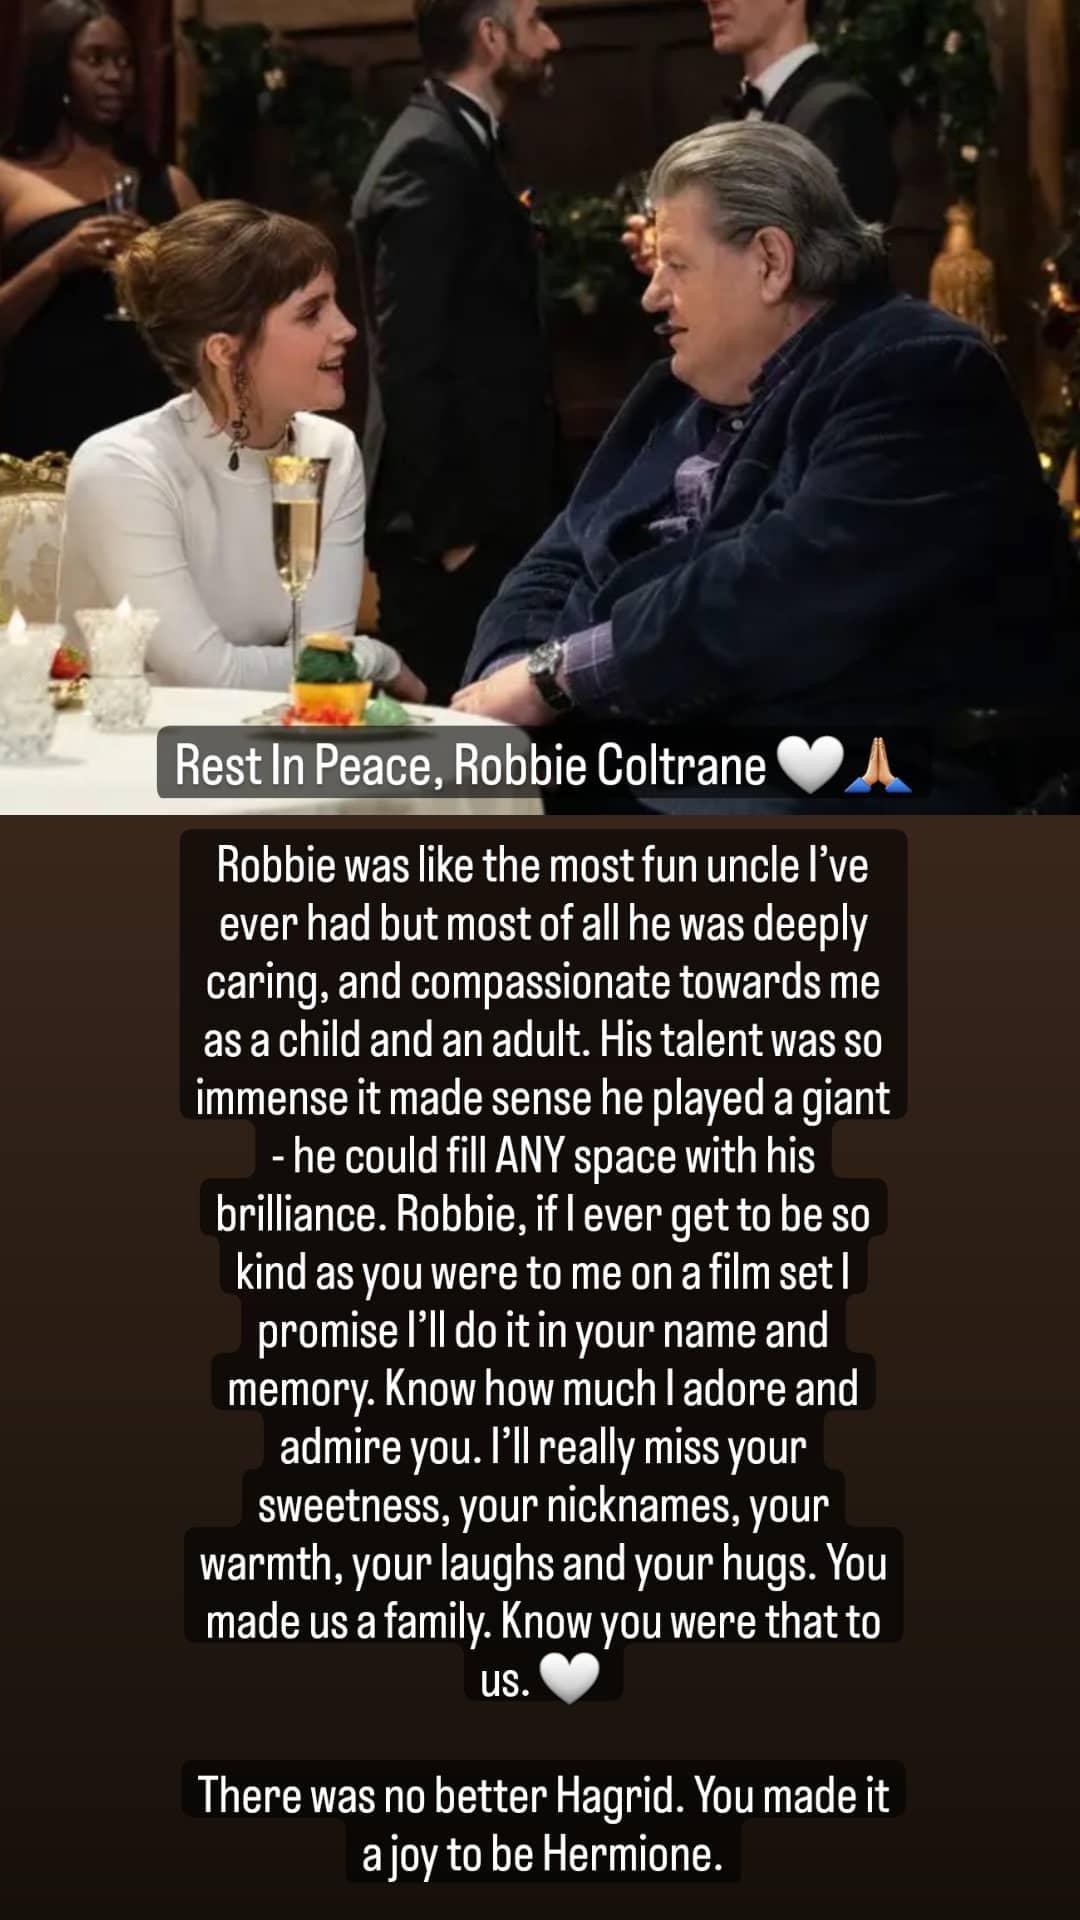 Emma Watson remembers Robbie Coltrane